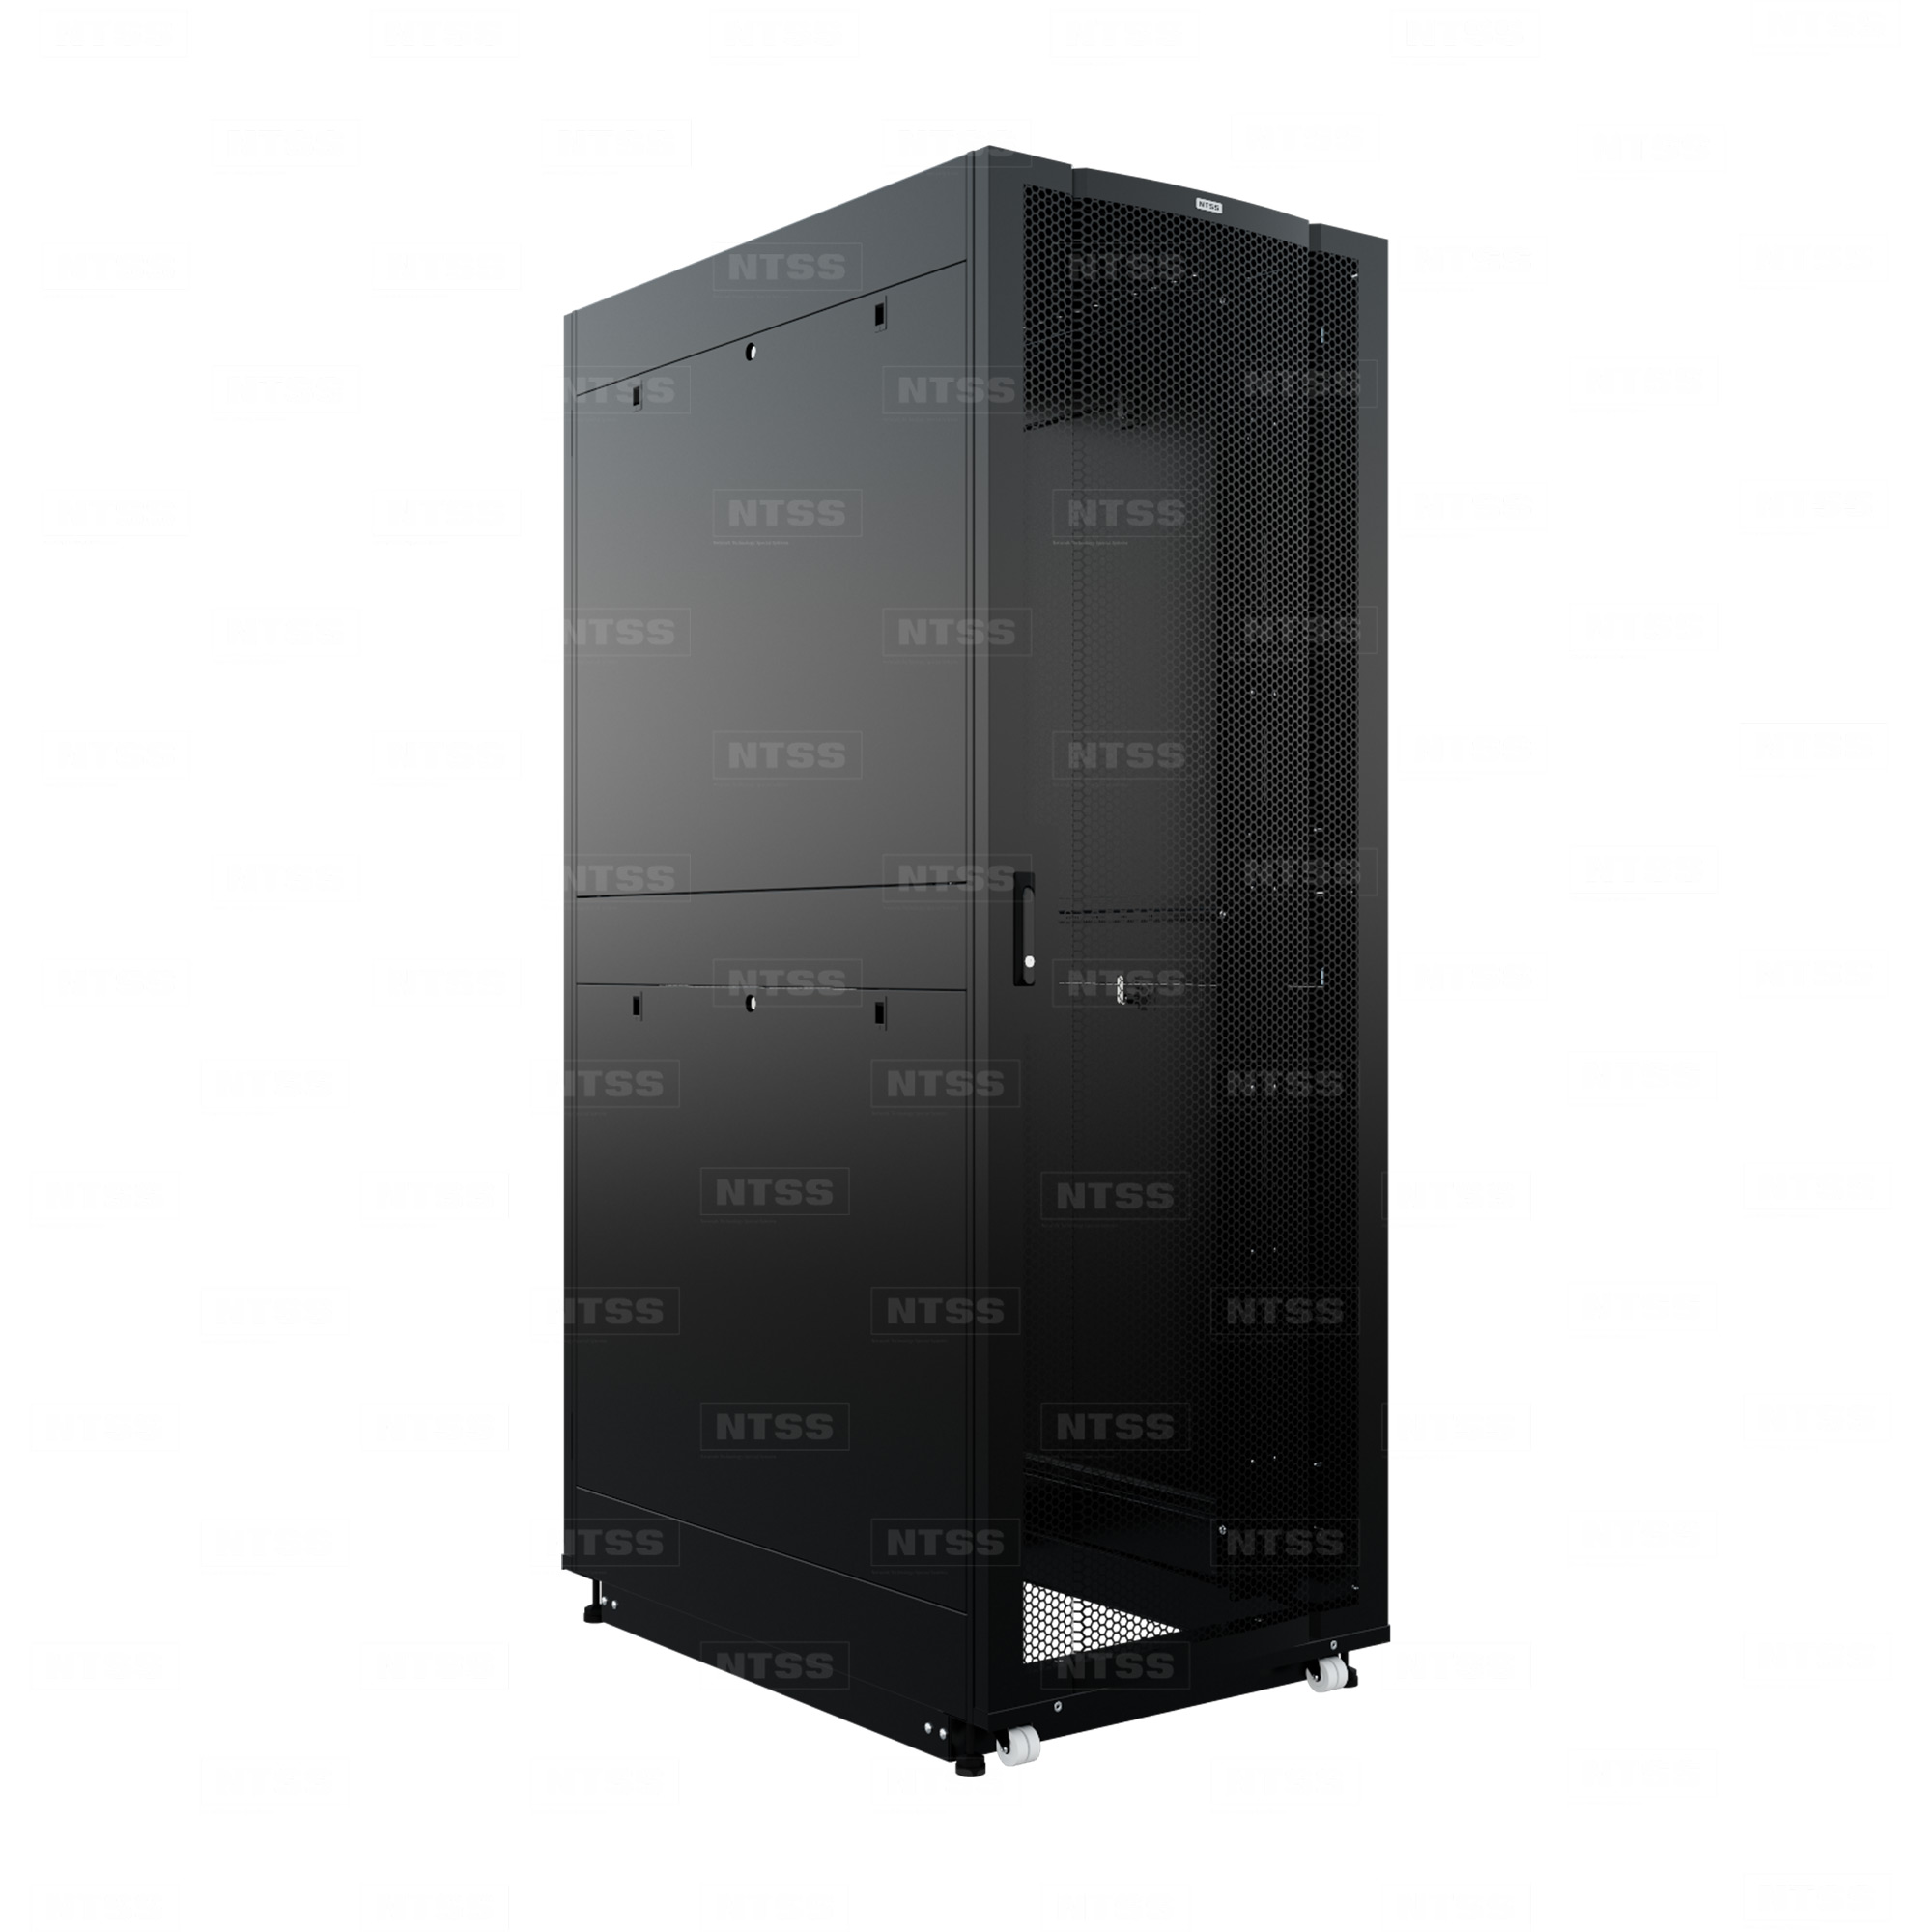 19" Напольный серверный шкаф NTSS ПРОЦОД PC МАСТЕР 48U 800х1200 мм, сварной в сборе, передняя дверь перфорация, задняя дверь распашная двойная перфорированная, боковые стенки, регулируемые опоры, ролики, черный RAL 9005